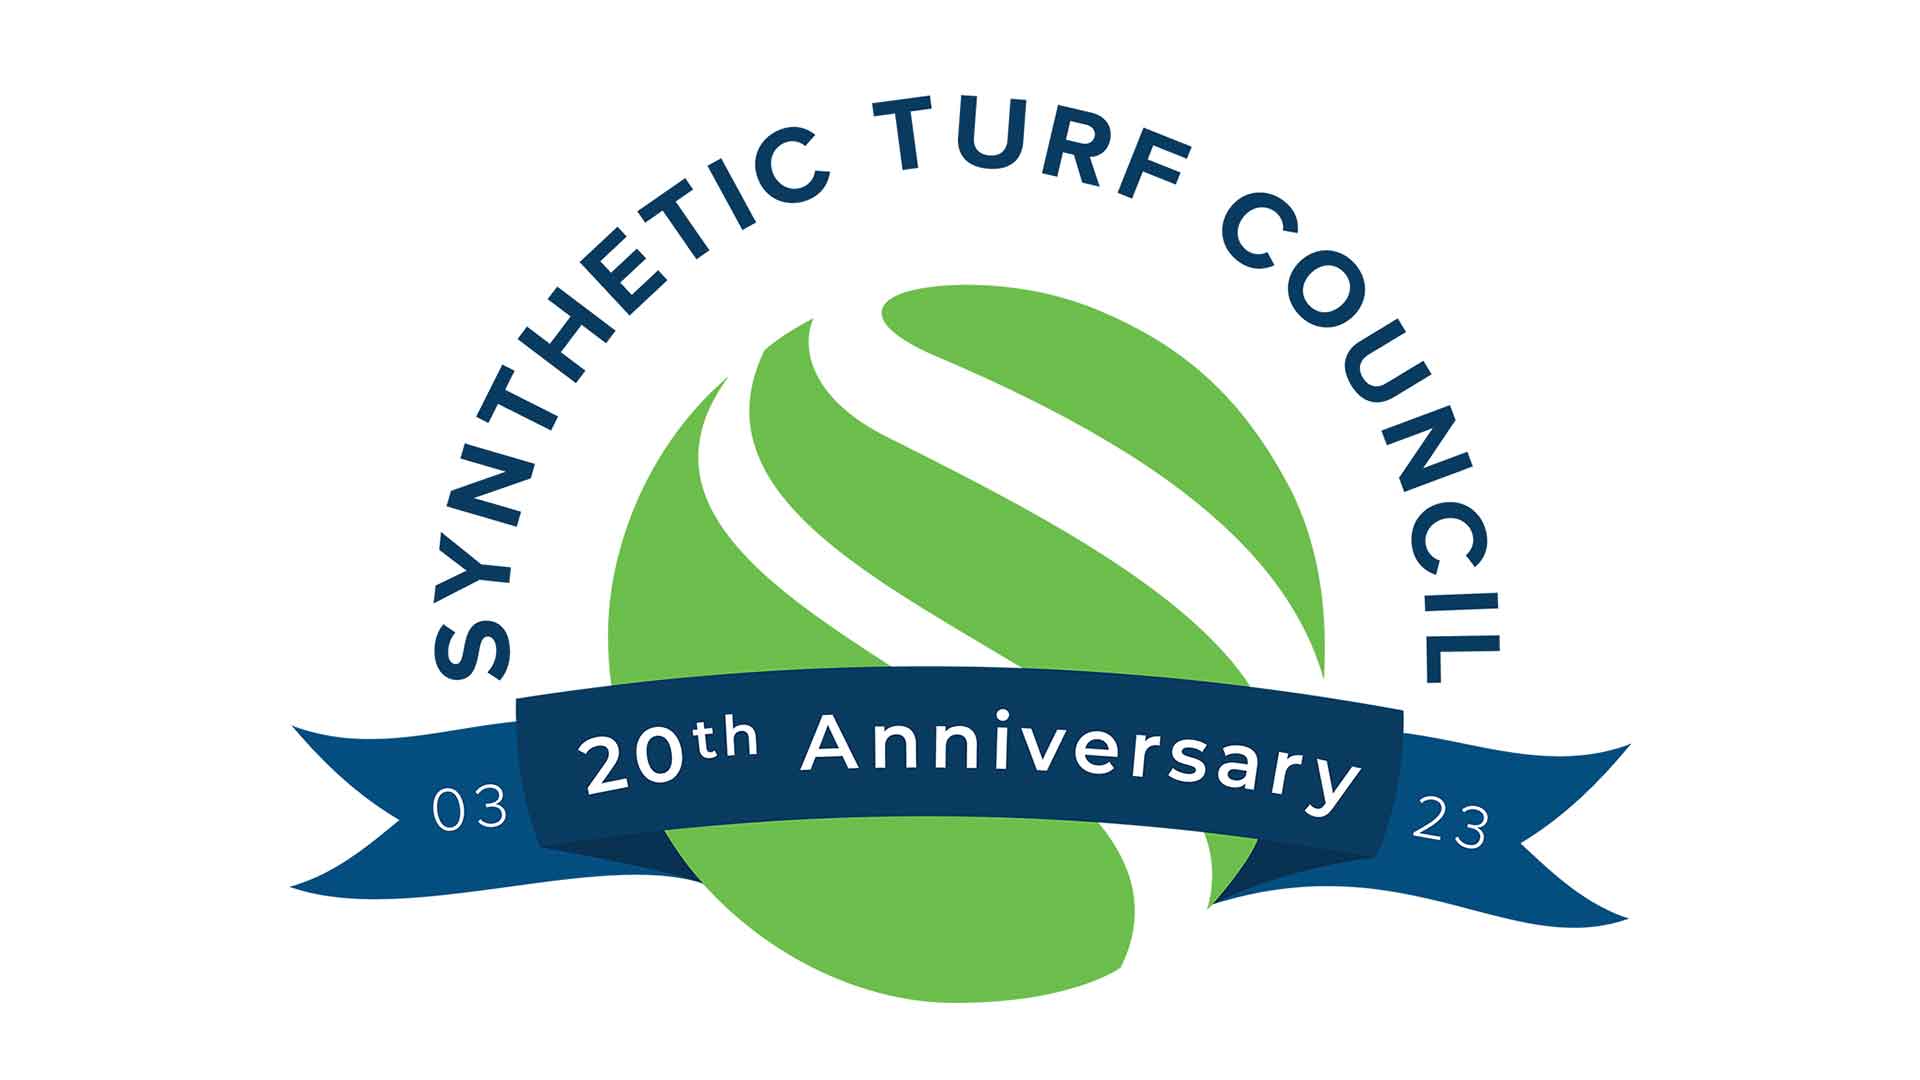 SYNLawn geëerd tijdens de zesde jaarlijkse Synthetic Turf Council Awards